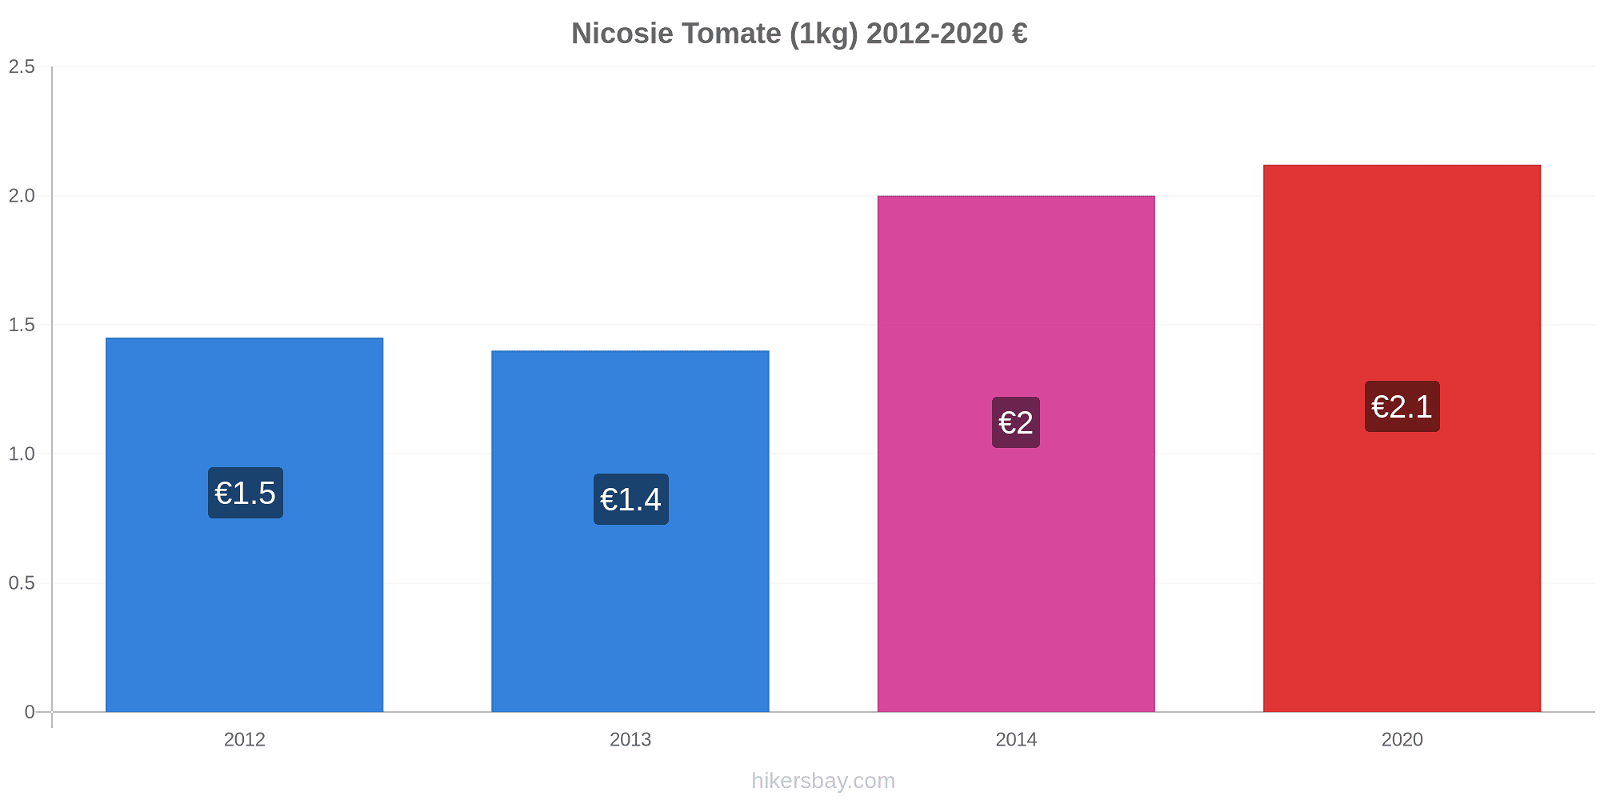 Nicosie changements de prix Tomate (1kg) hikersbay.com